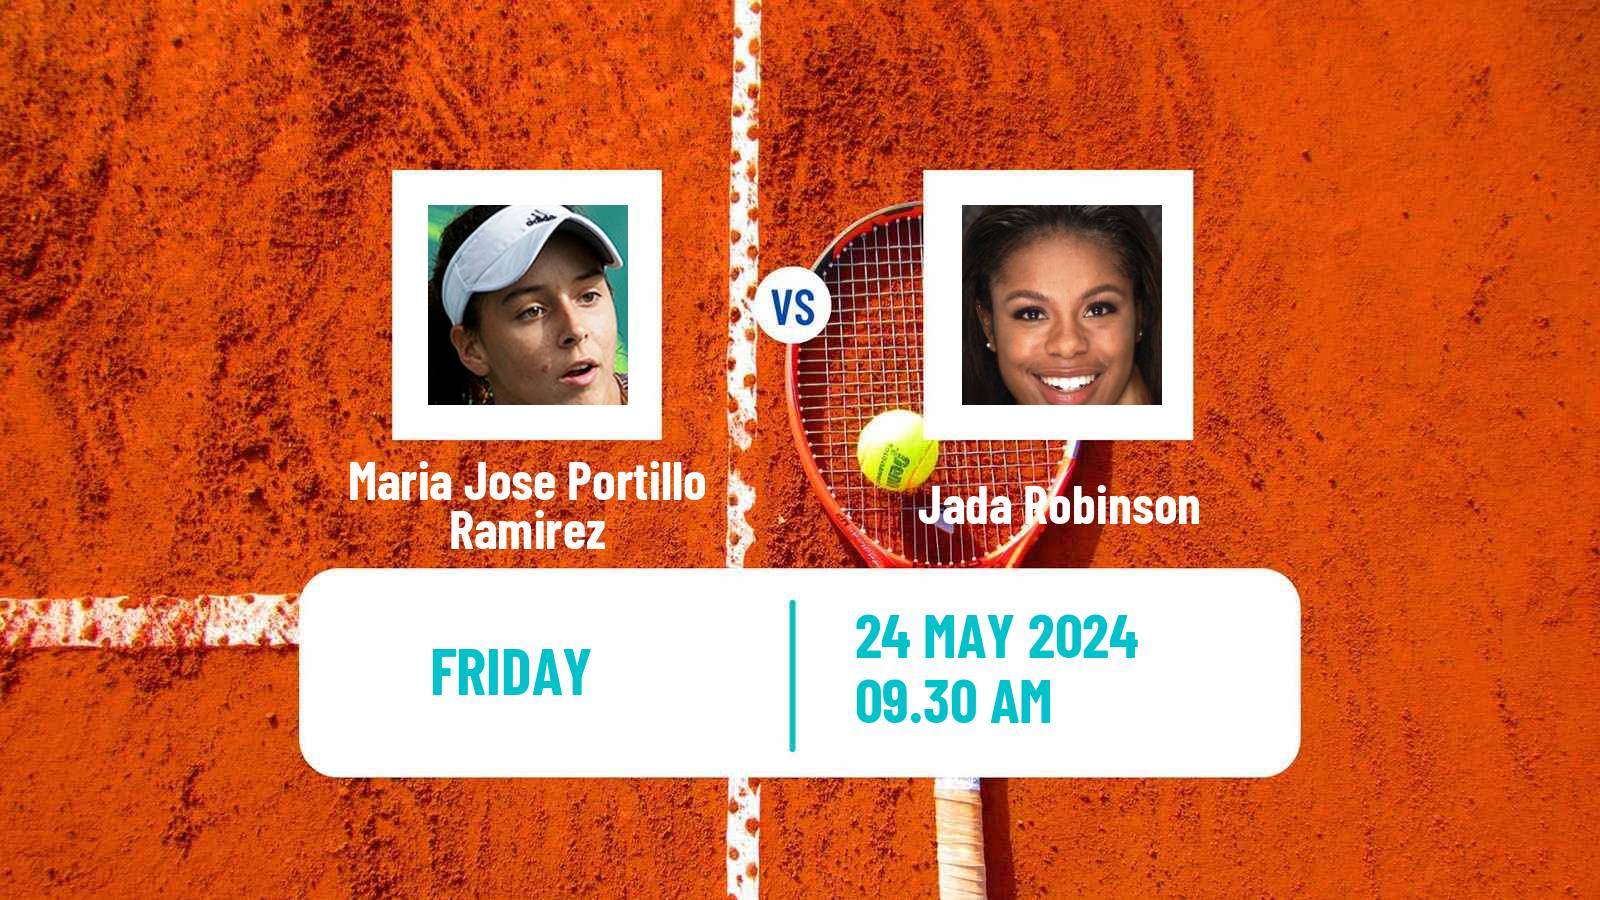 Tennis ITF W35 Santo Domingo 3 Women Maria Jose Portillo Ramirez - Jada Robinson